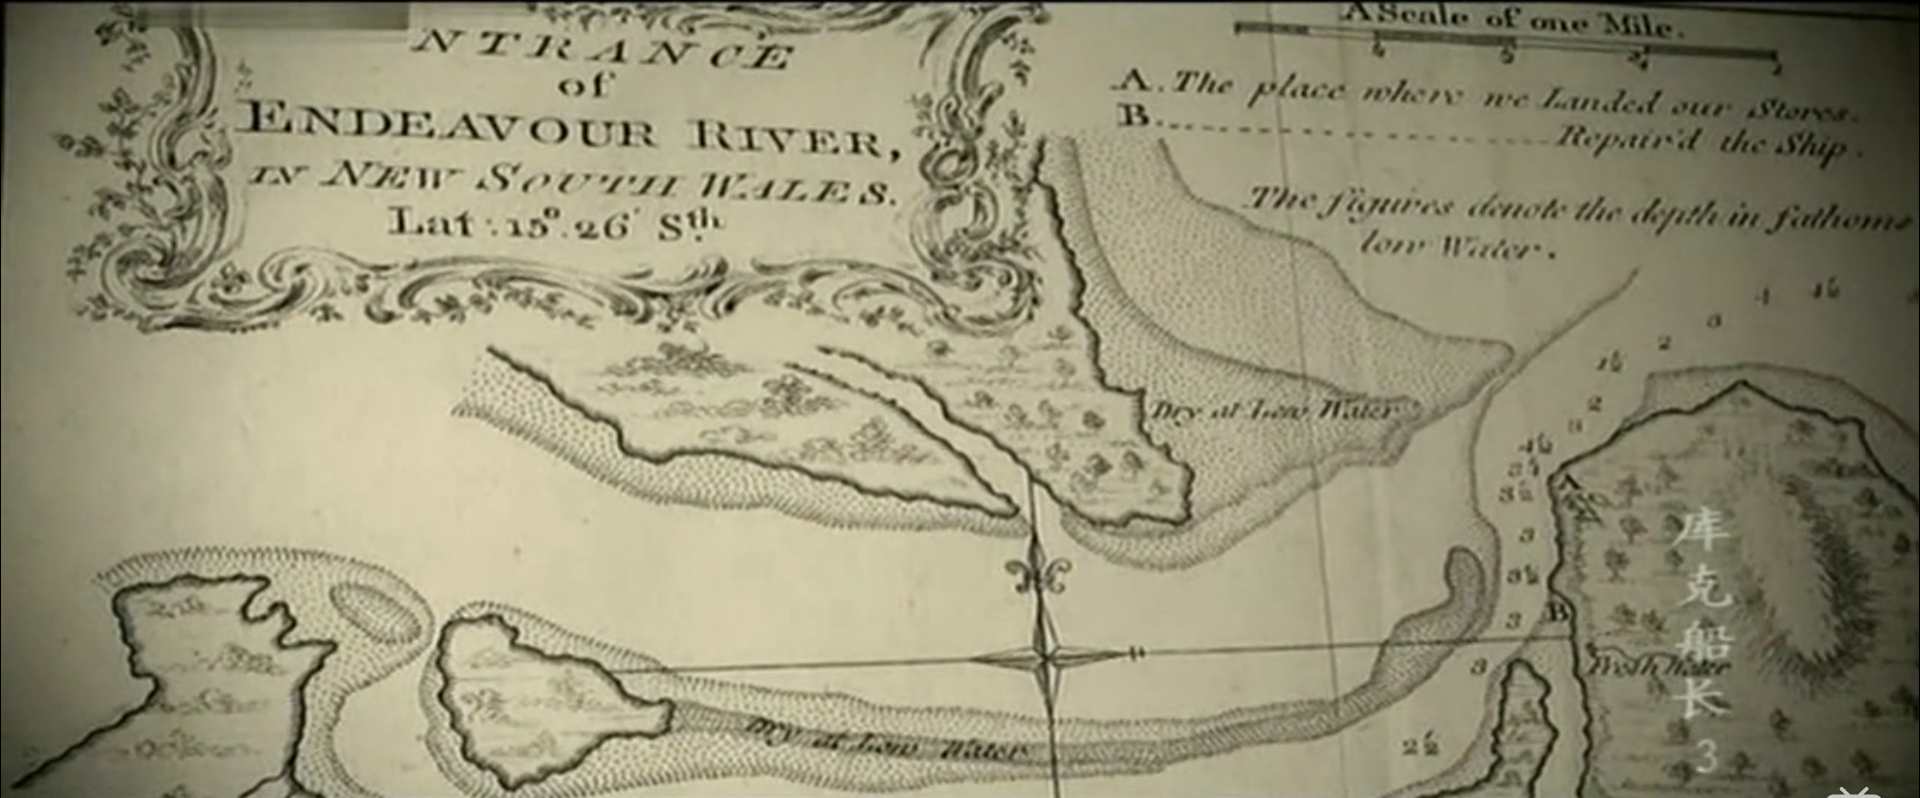 庫克繪製的奮進號河地圖